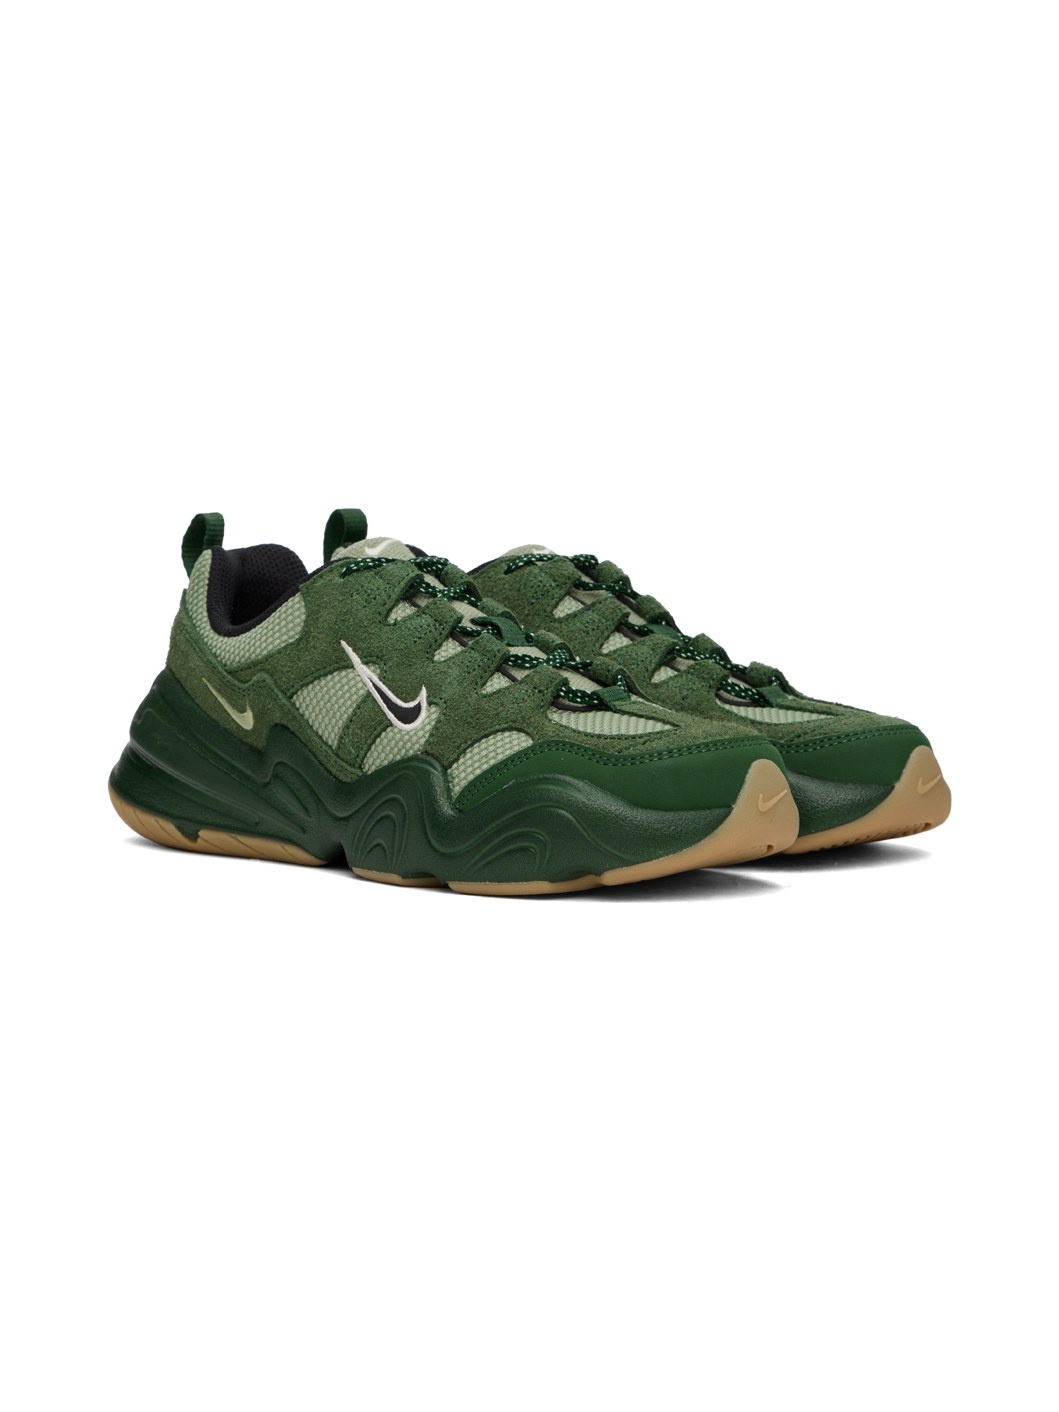 Green Tech Hera Sneakers - 4